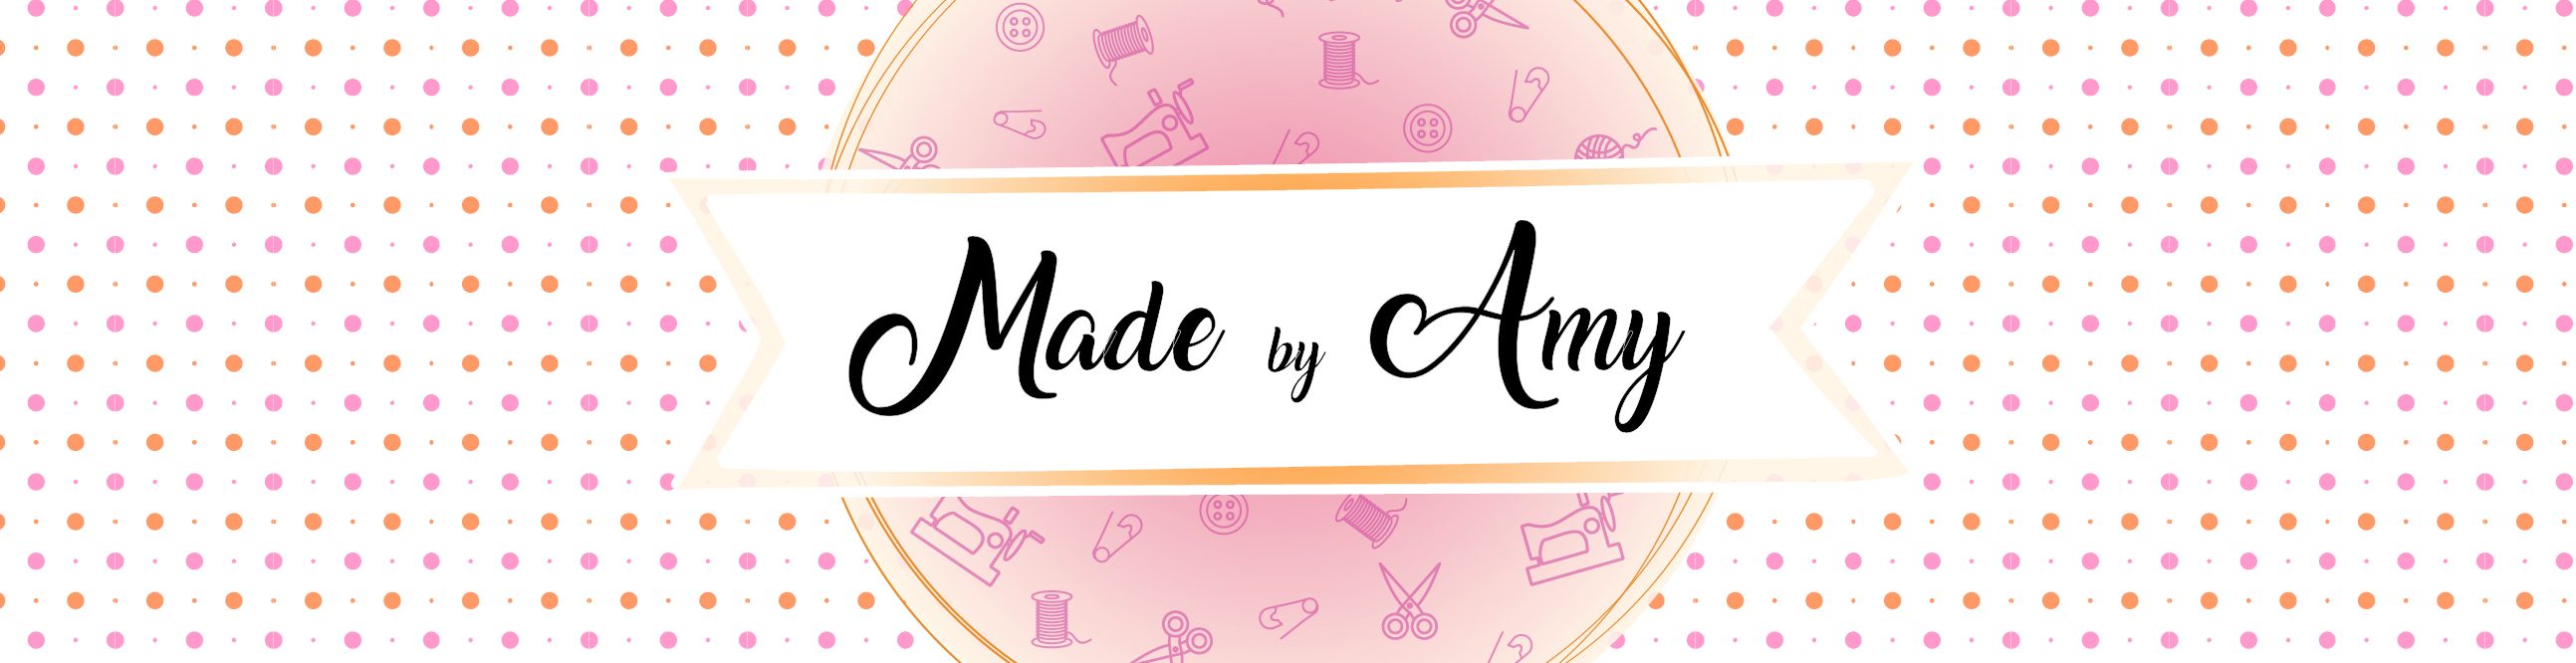 Made by Amy – Le blog du crochet, des amigurumi, de la couture et de la création. Retrouvez plein de patrons et de tutos